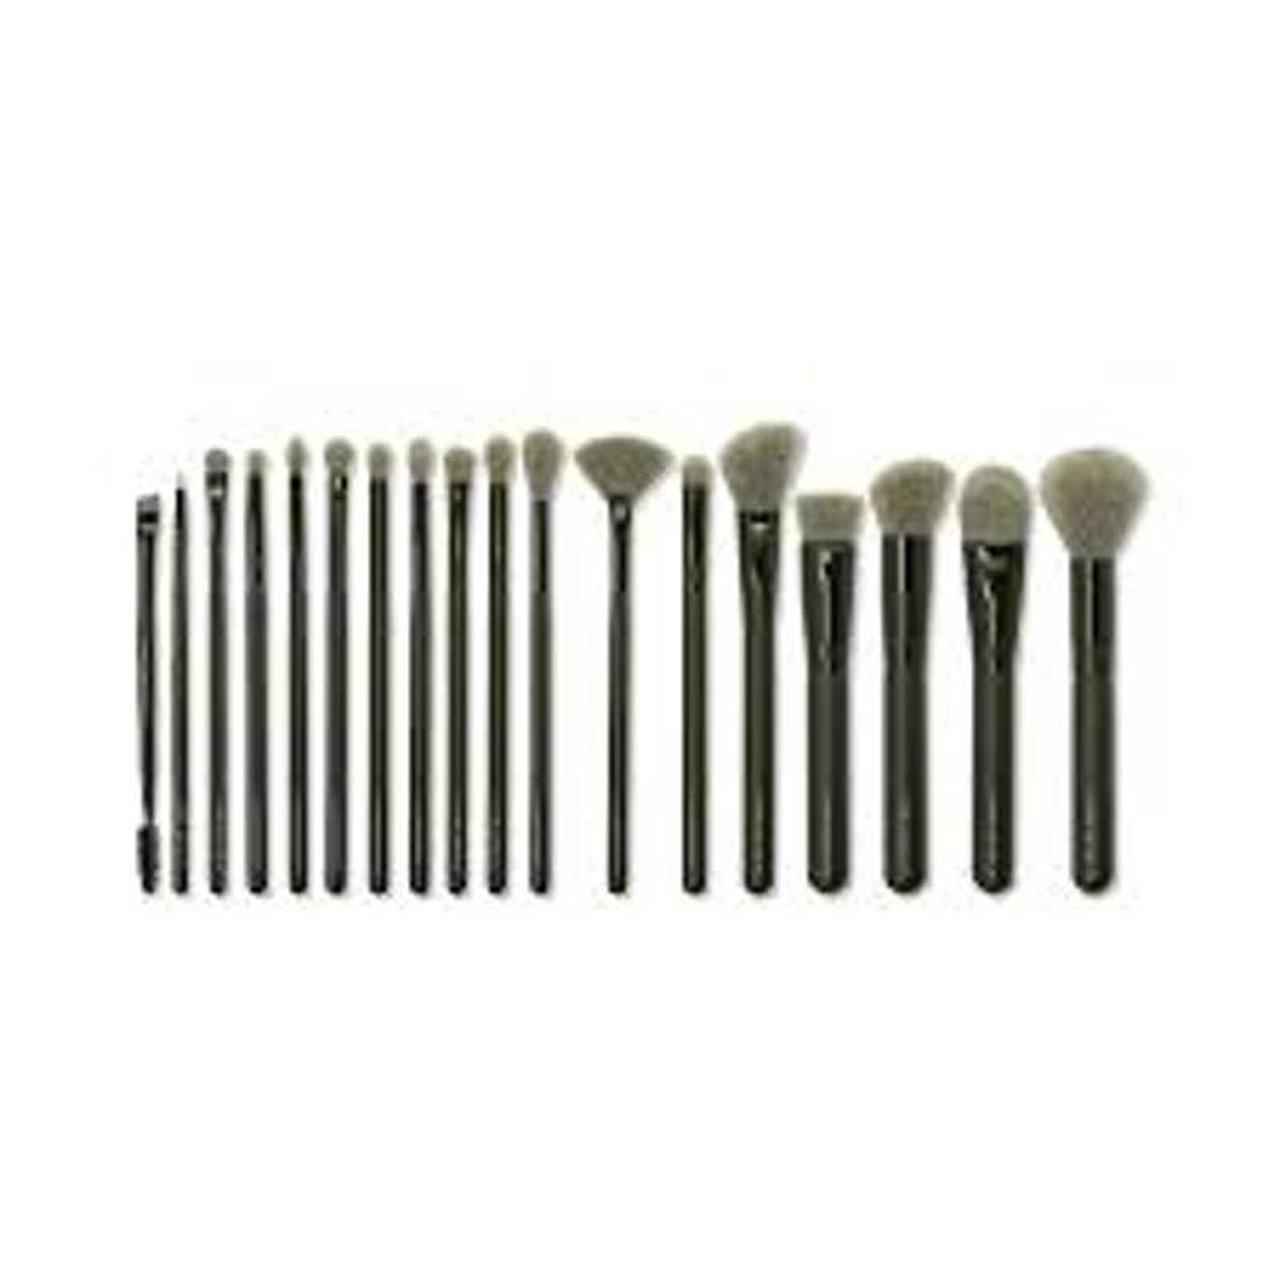 Kara Grey and Black Tools-and-brushes (2)